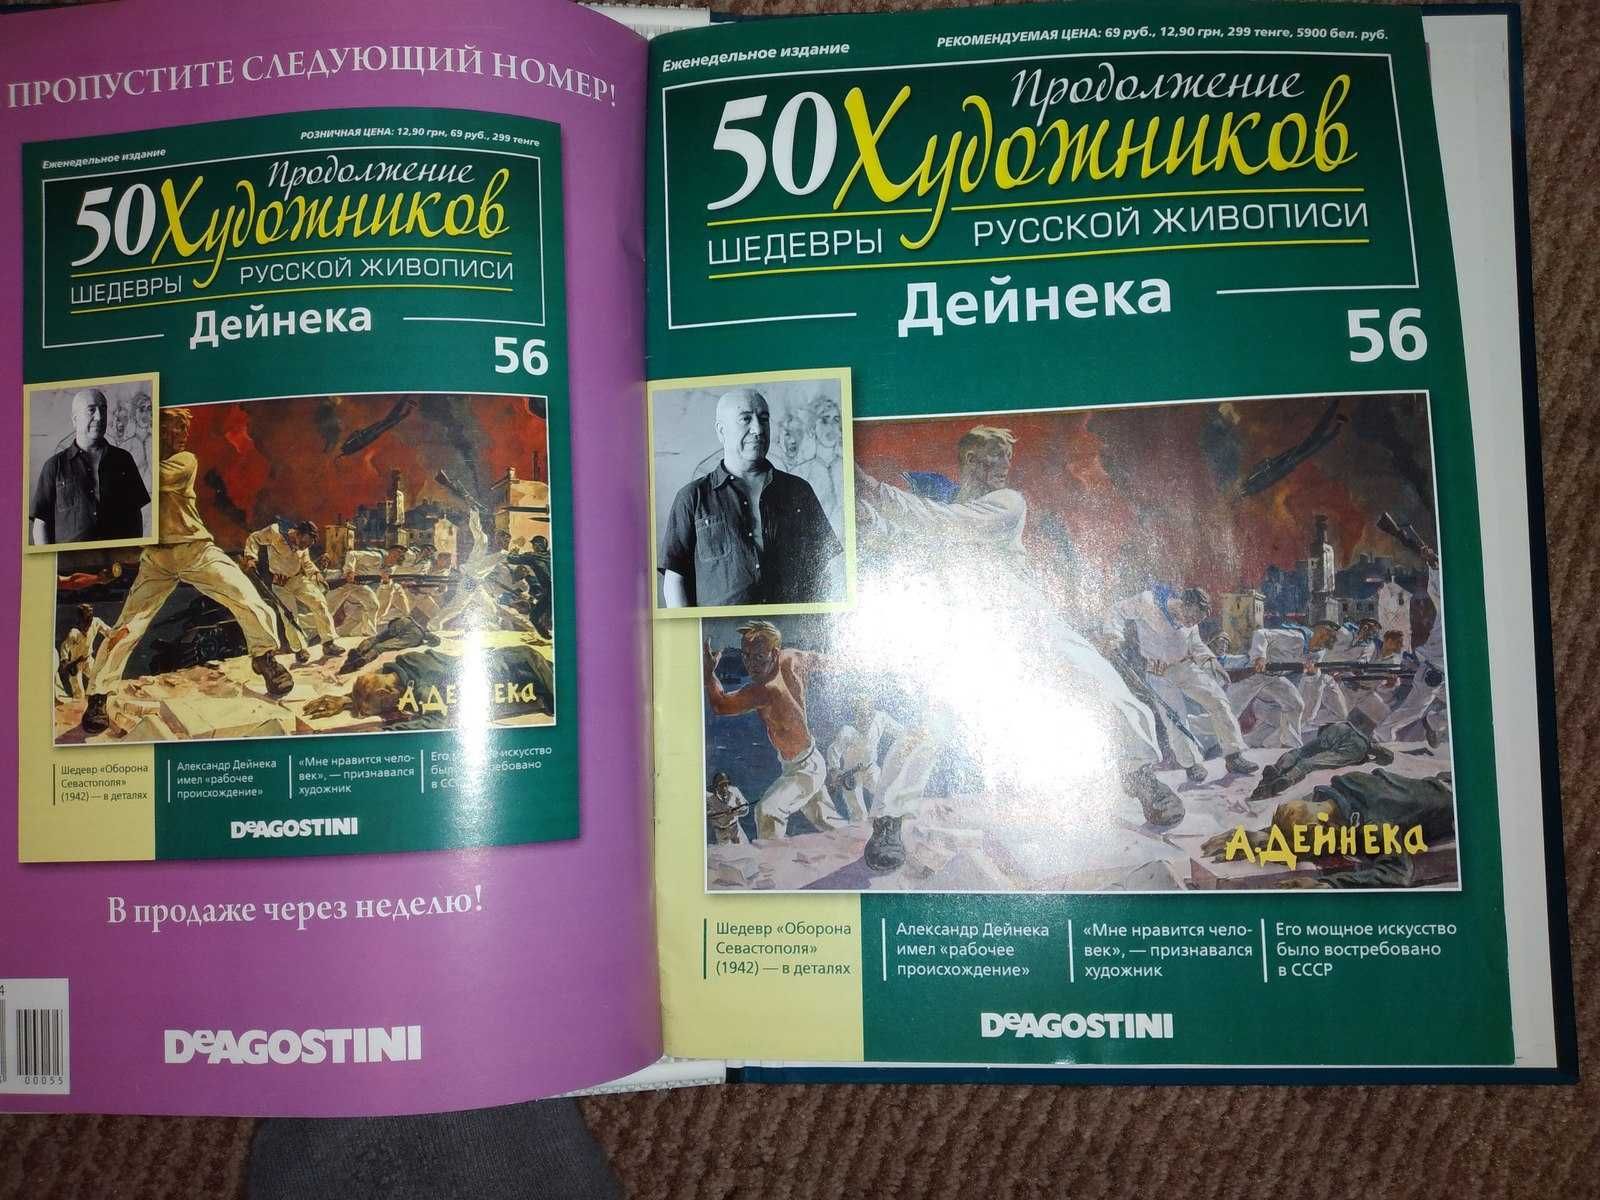 50 Художников-Шедевры Русской Живописи